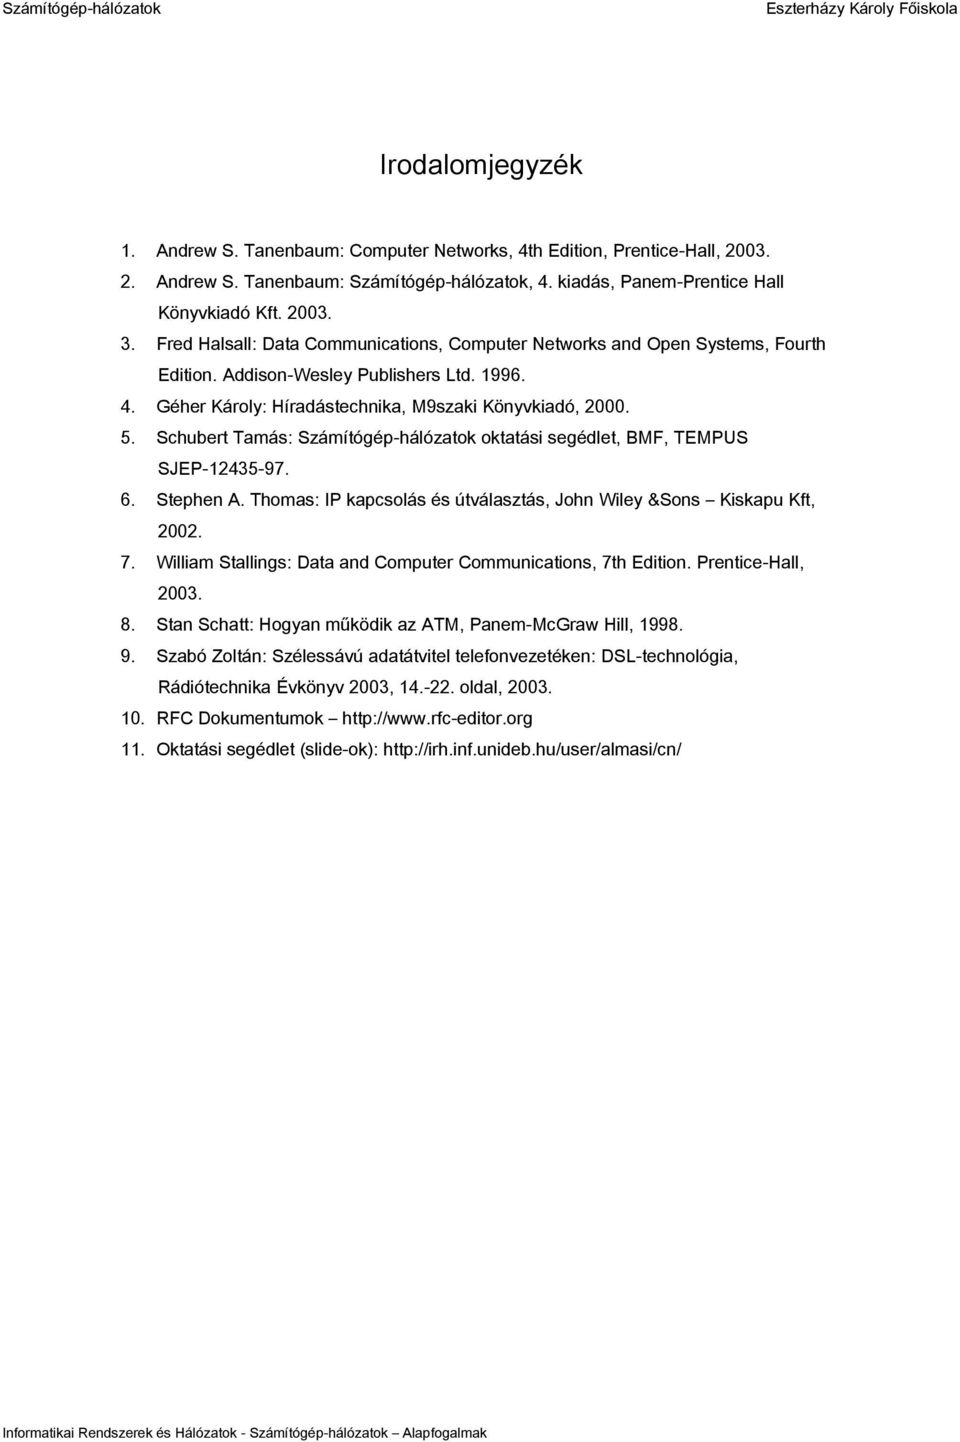 Schubert Tamás: oktatási segédlet, BMF, TEMPUS SJEP-12435-97. 6. Stephen A. Thomas: IP kapcsolás és útválasztás, John Wiley &Sons Kiskapu Kft, 2002. 7.